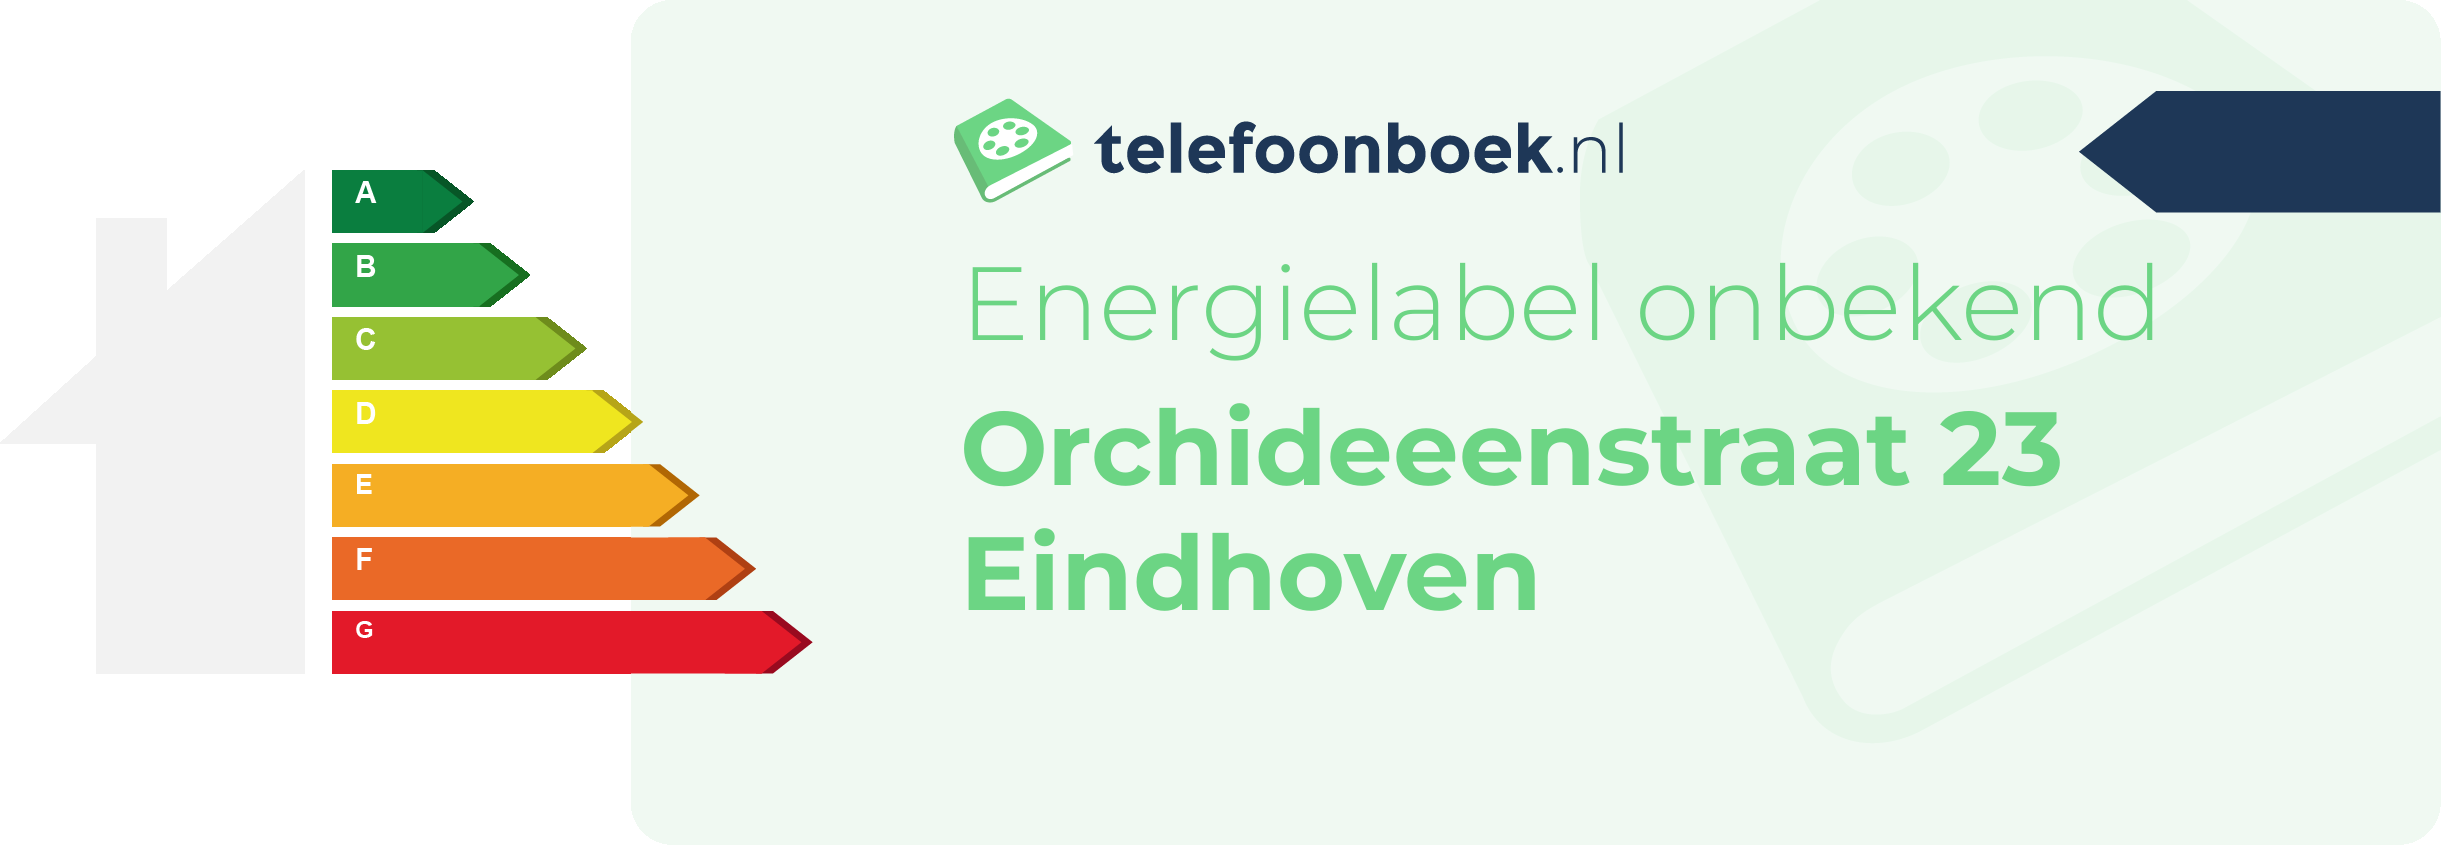 Energielabel Orchideeenstraat 23 Eindhoven